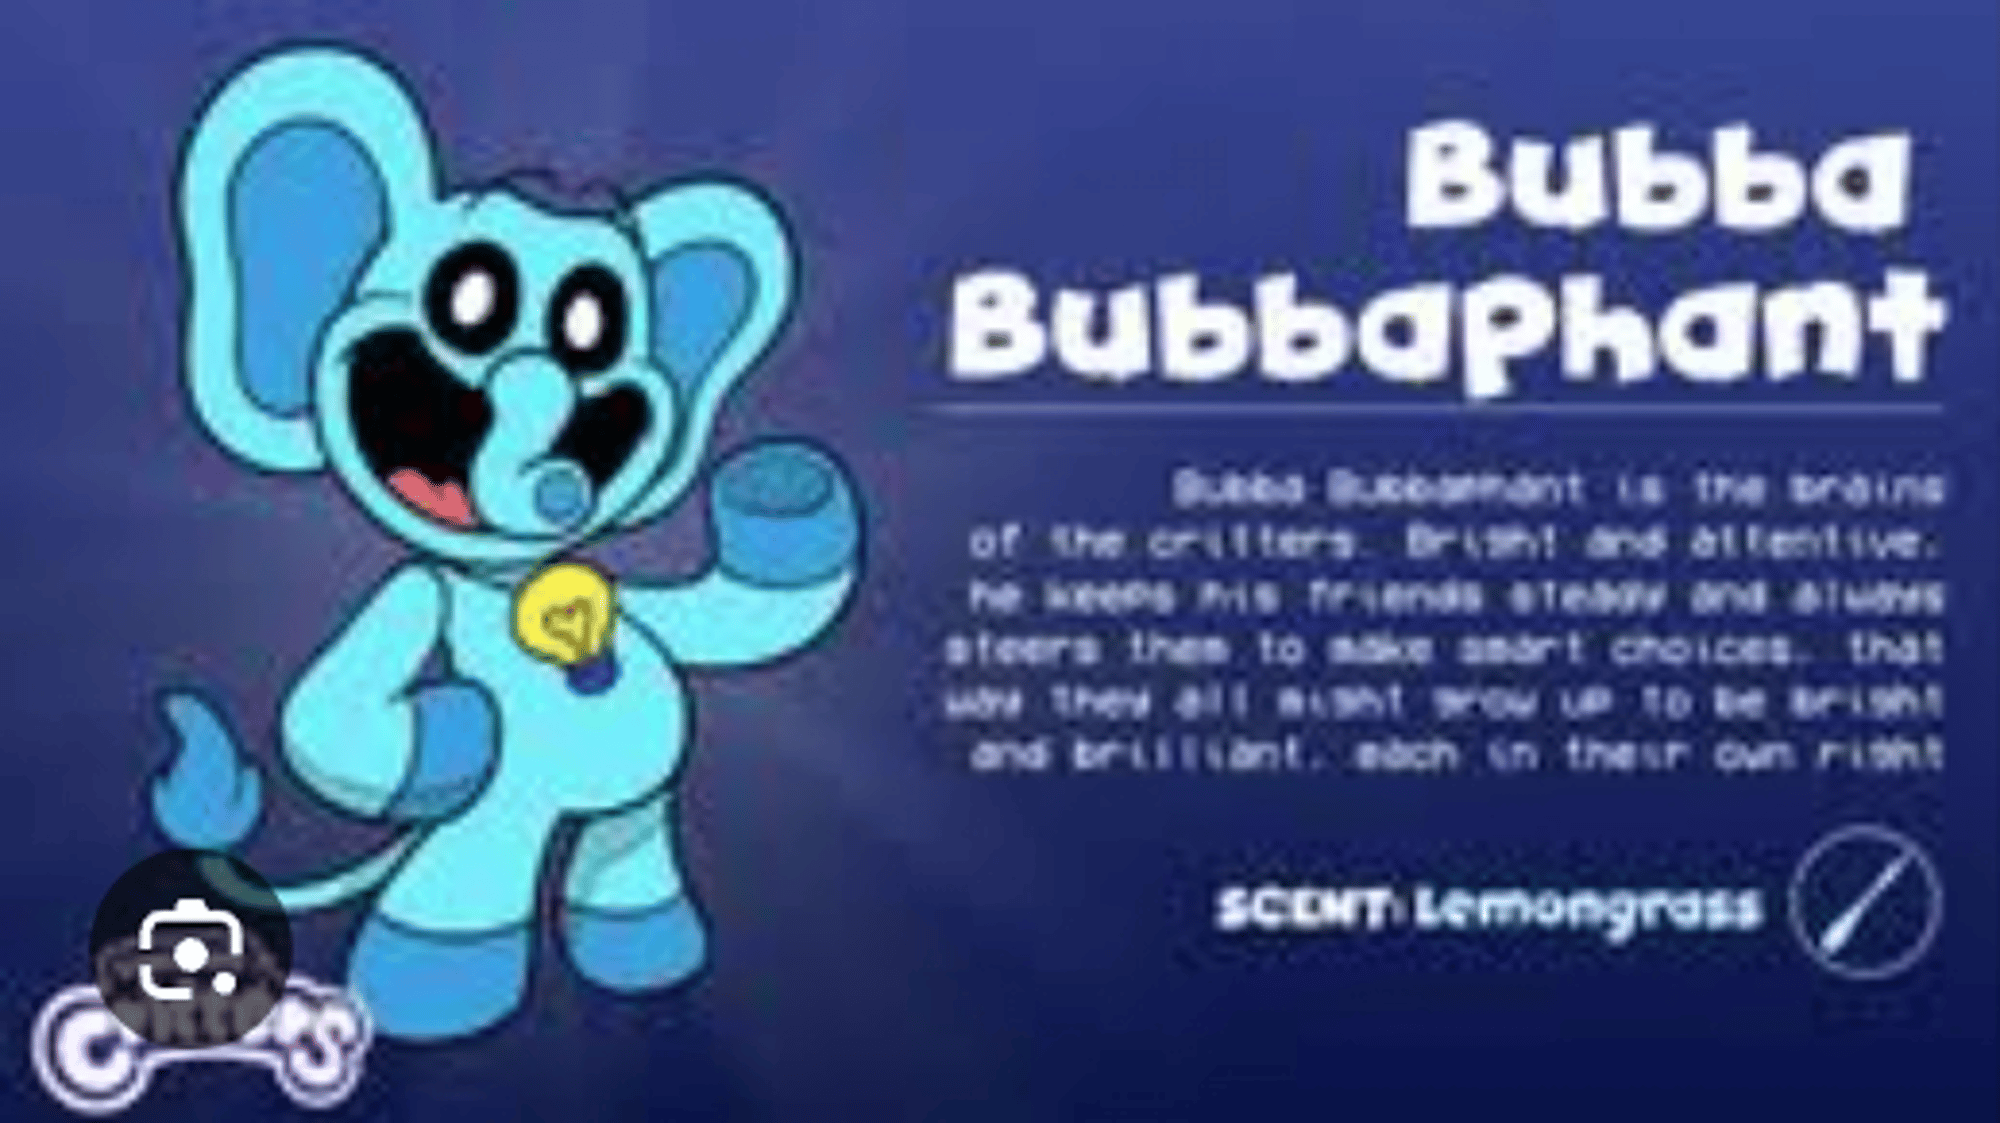 bubba bubbaphant